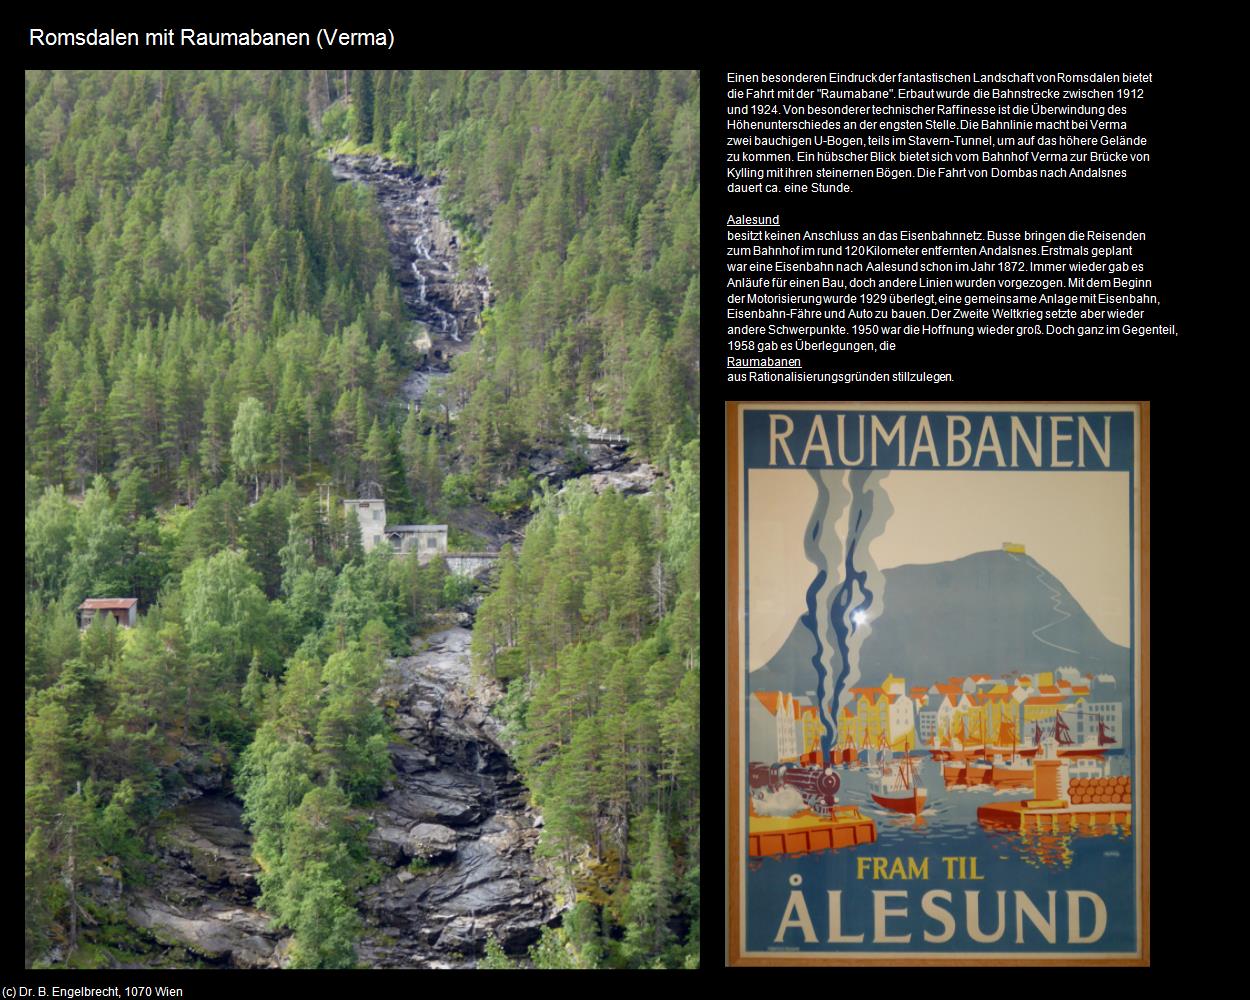 Romsdalen mit Raumabana (Verma) in Kulturatlas-NORWEGEN(c)B.Engelbrecht